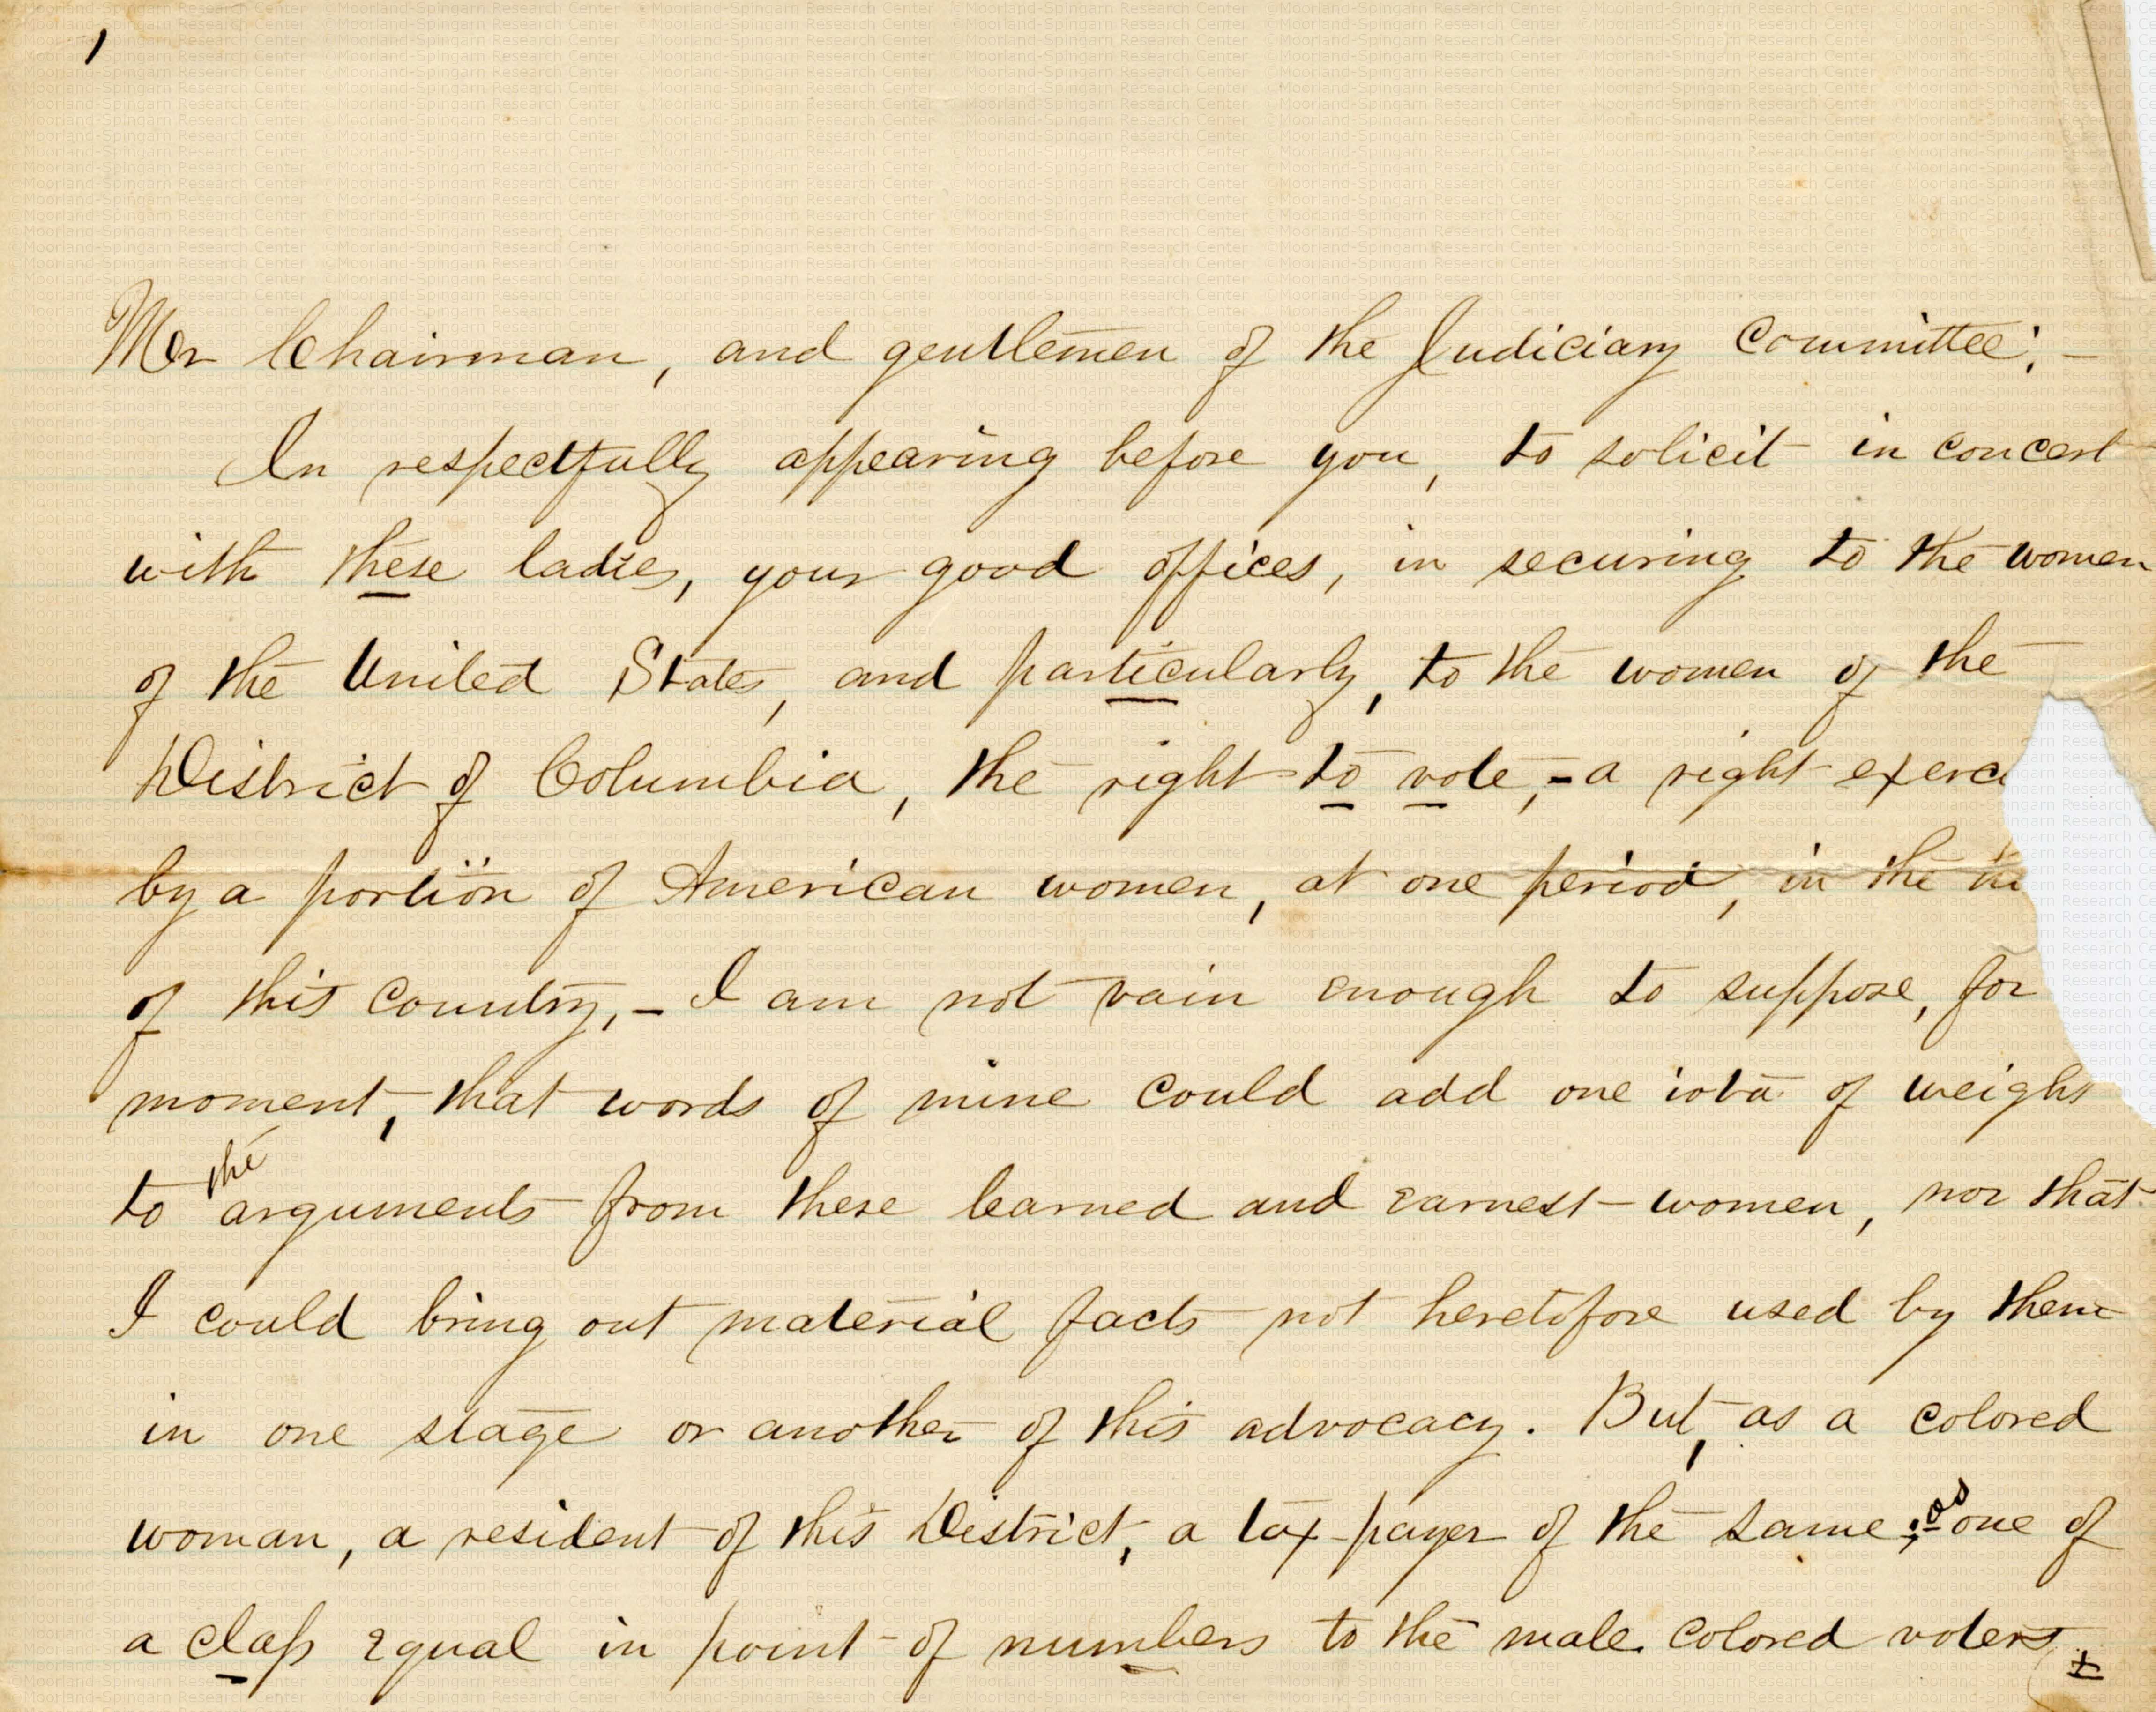 Photograph of a hand-written document